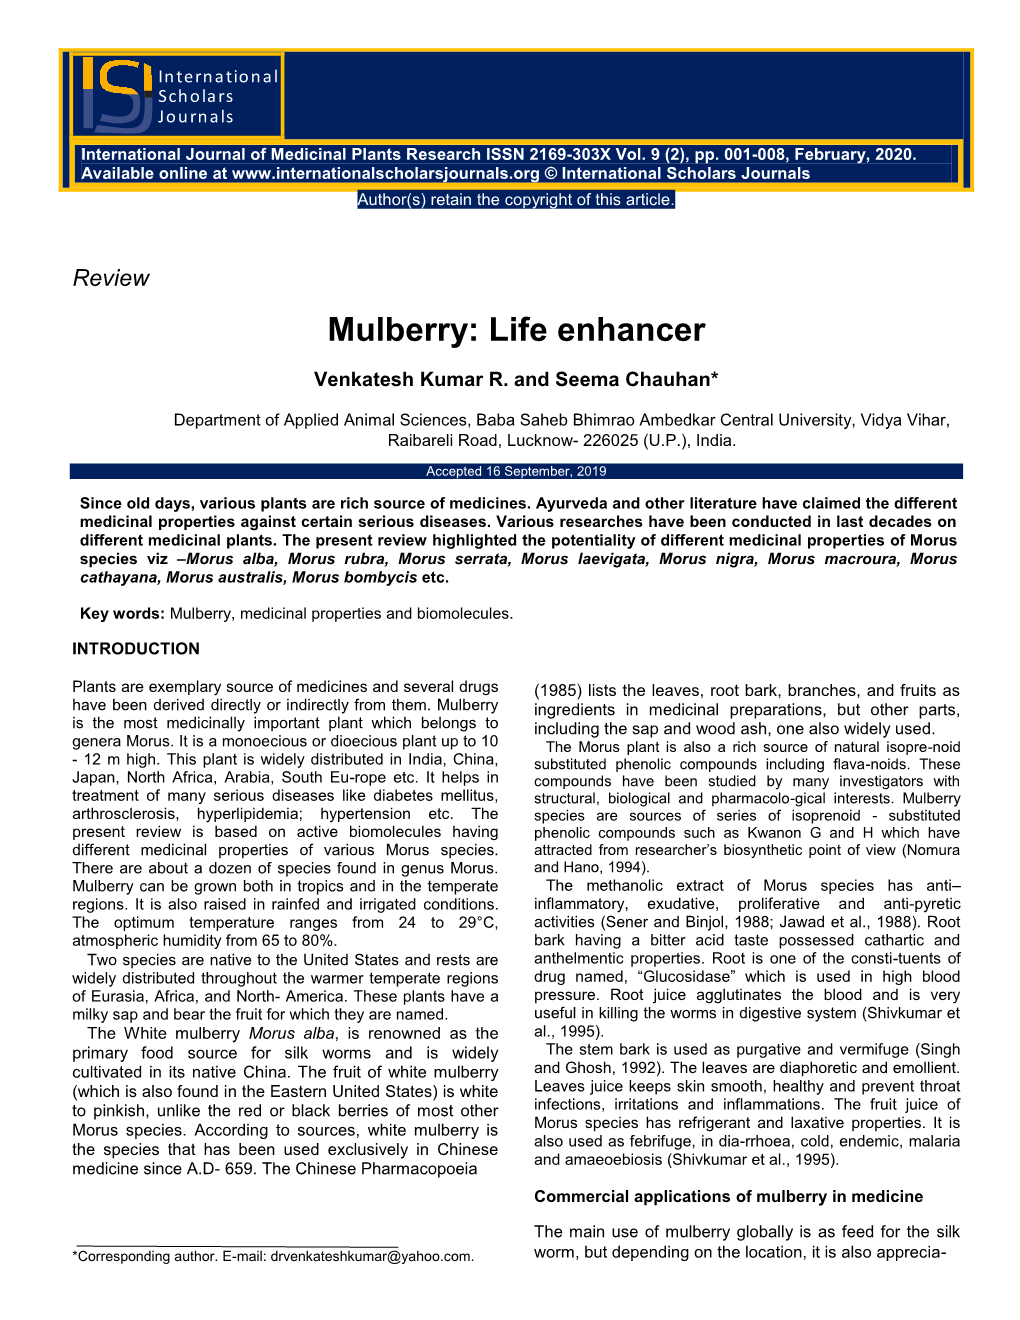 Mulberry: Life Enhancer